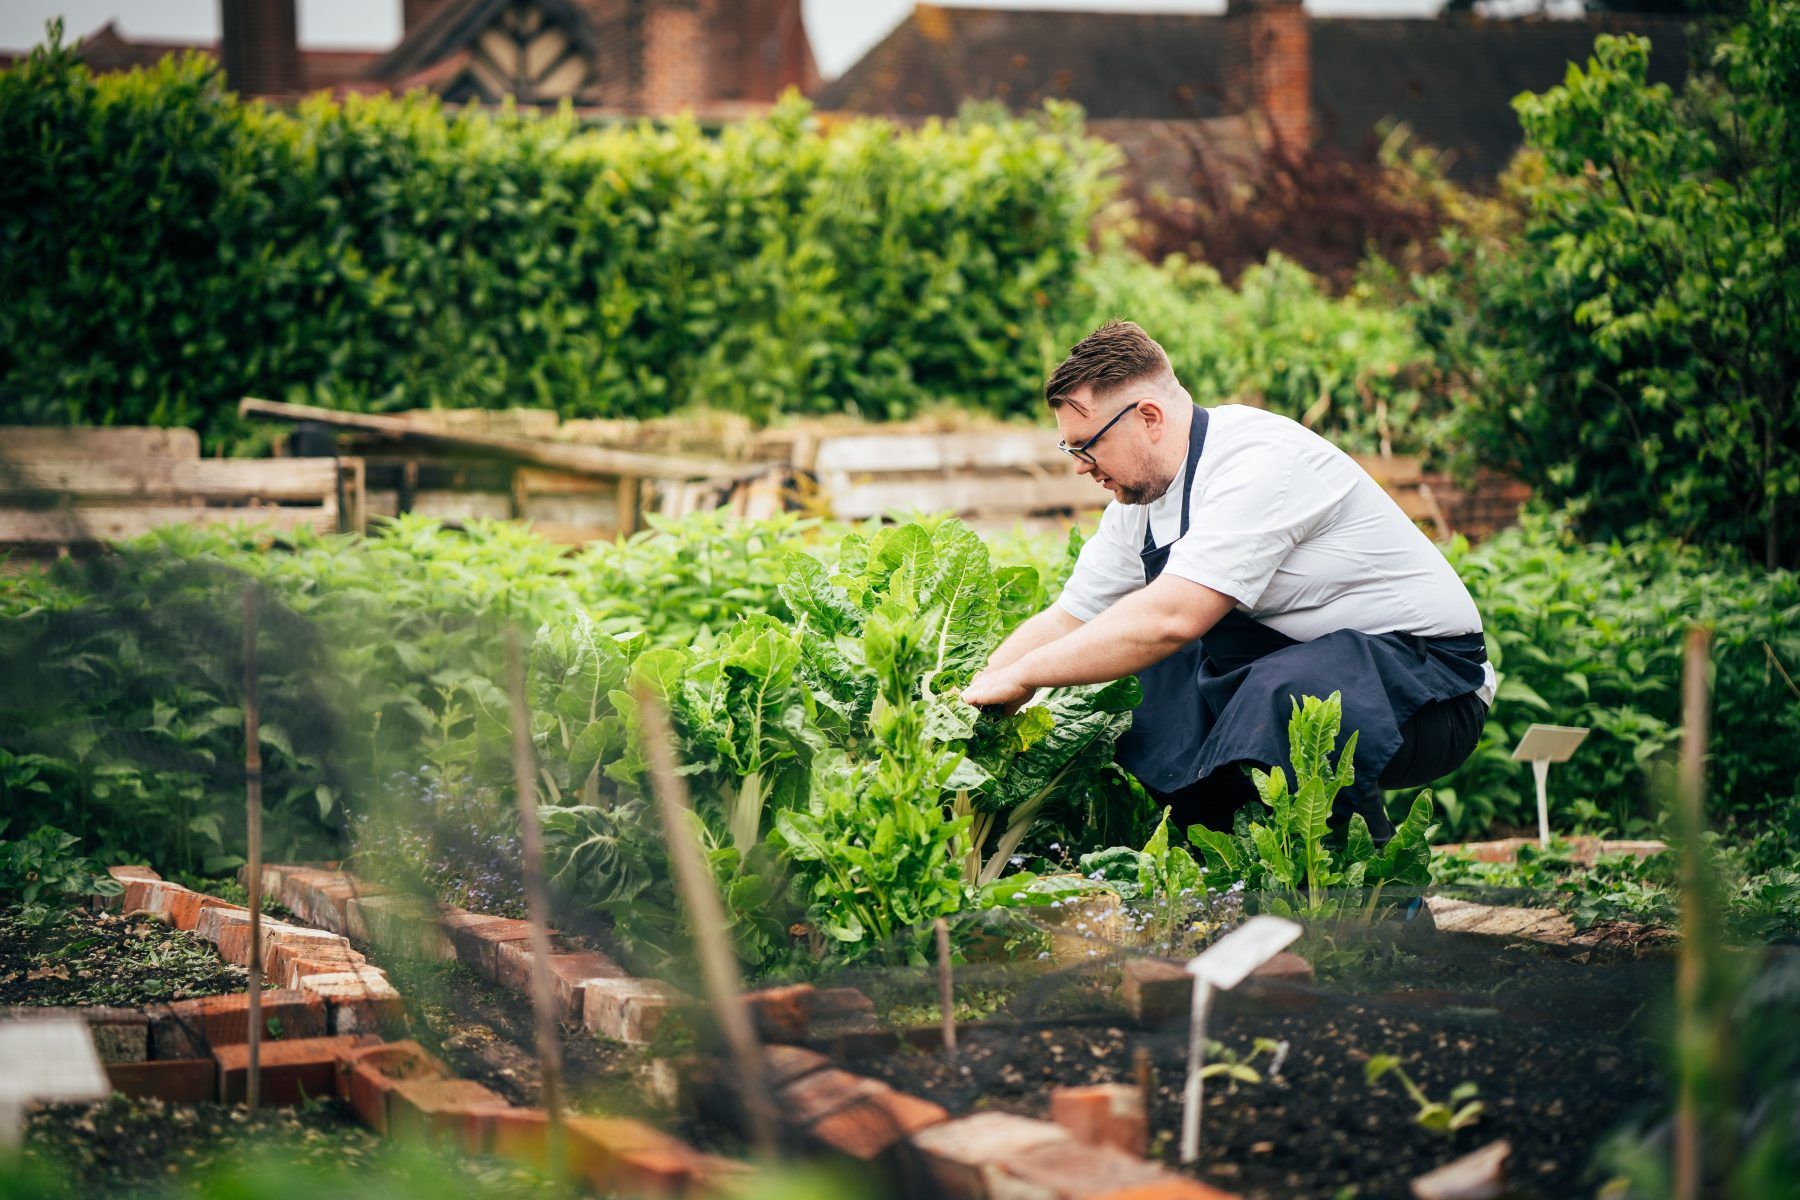 The Montagu Arms chef garden